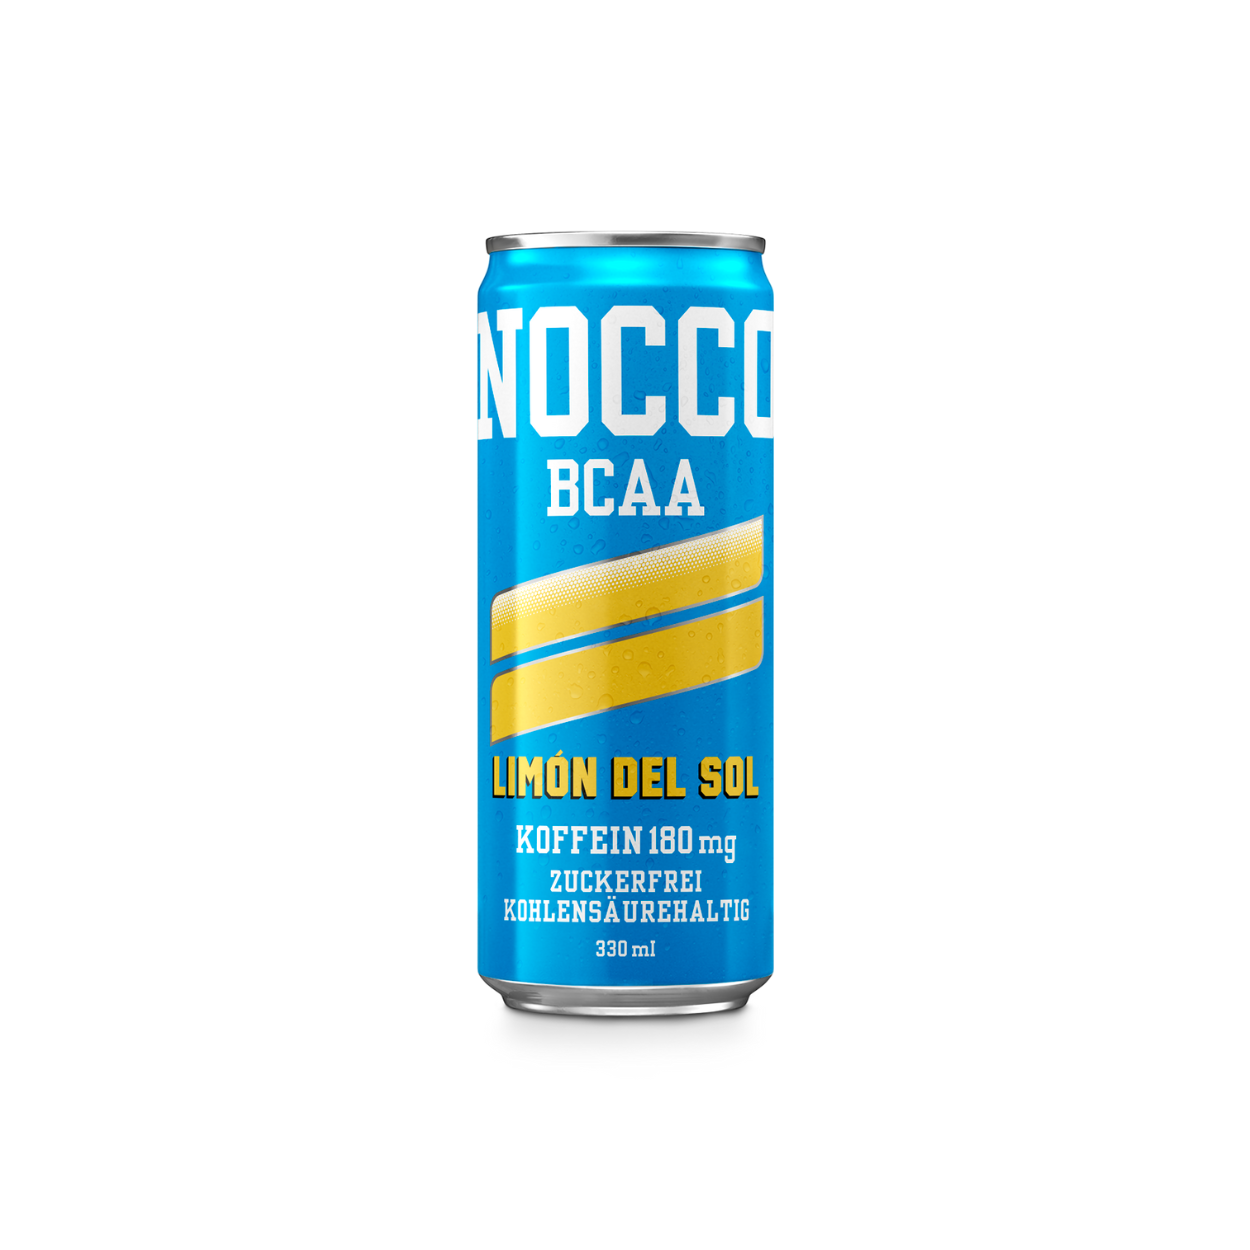 Nocco Bcaa Limon Del Sol (1-24x330ml)